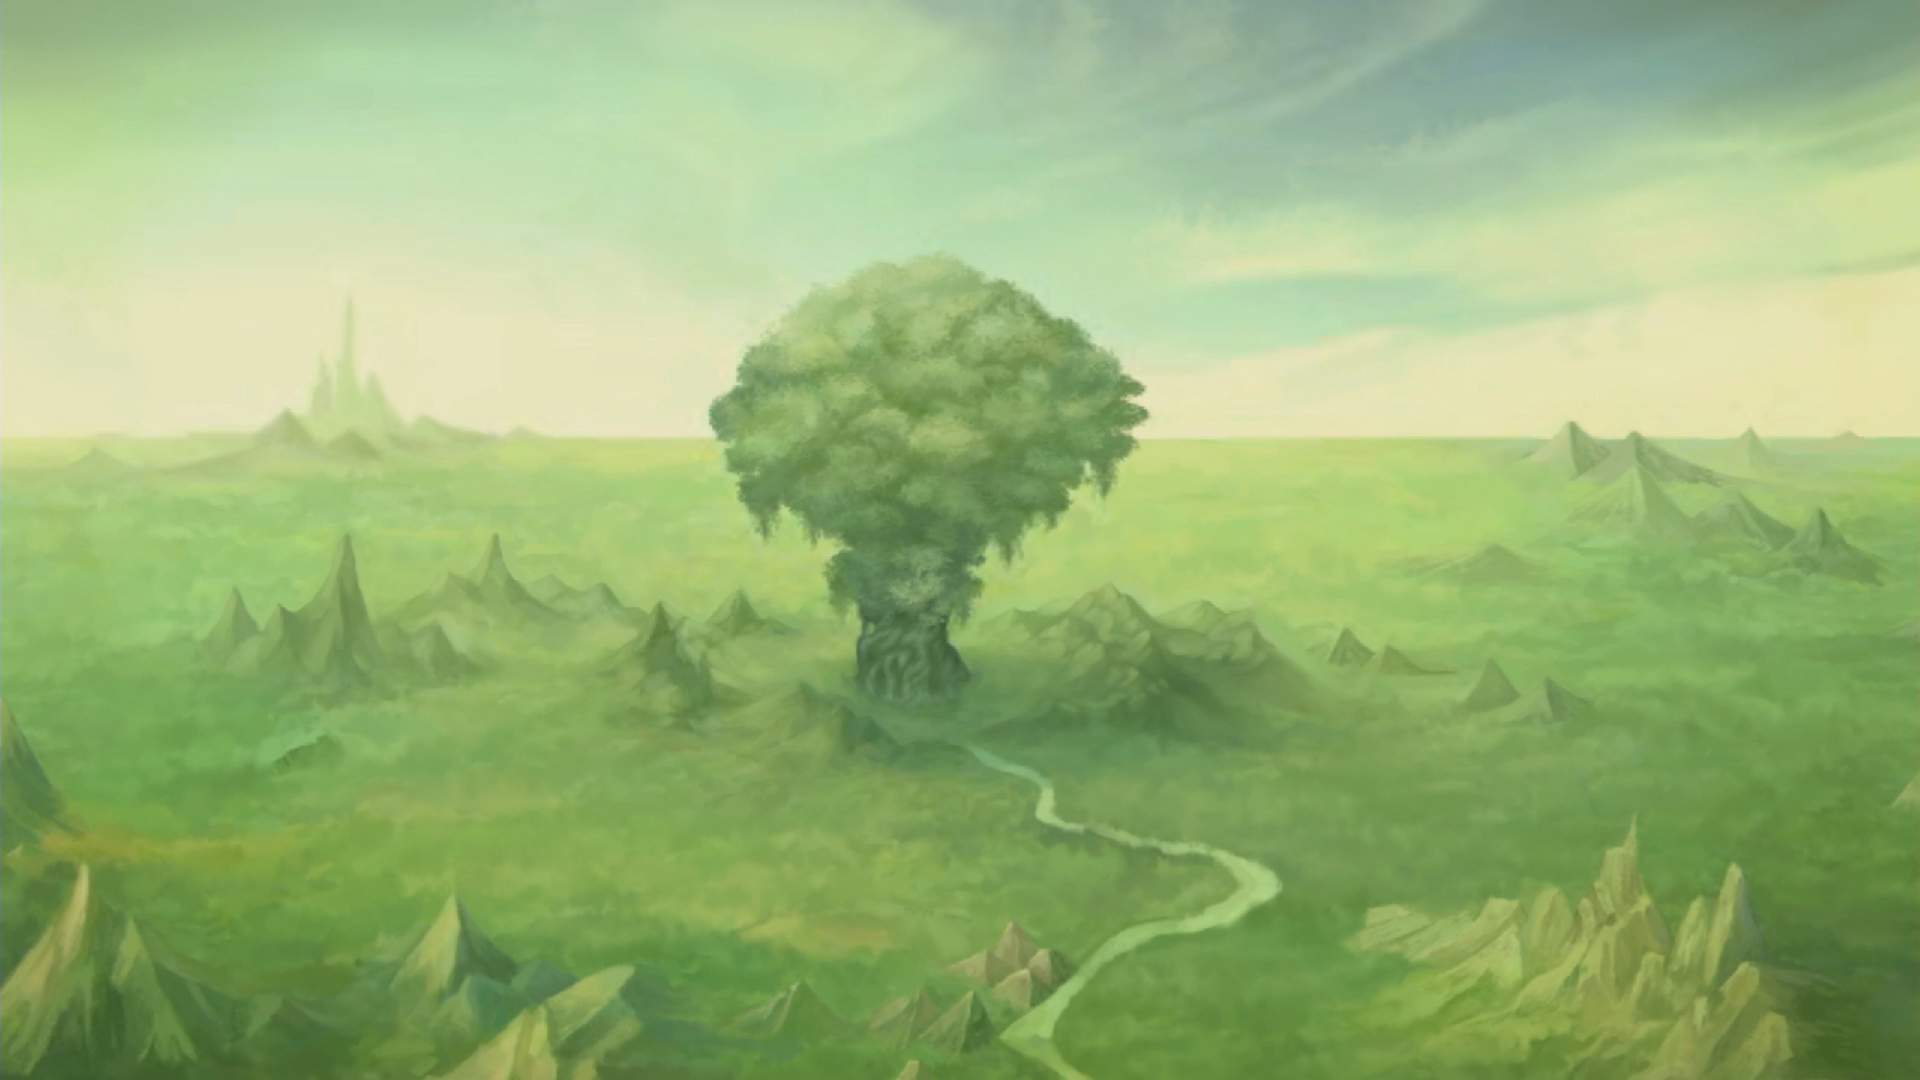 Ein Blick auf den Mana-Baum aus der Ferne. Er steht in einer grünen Landschaft.